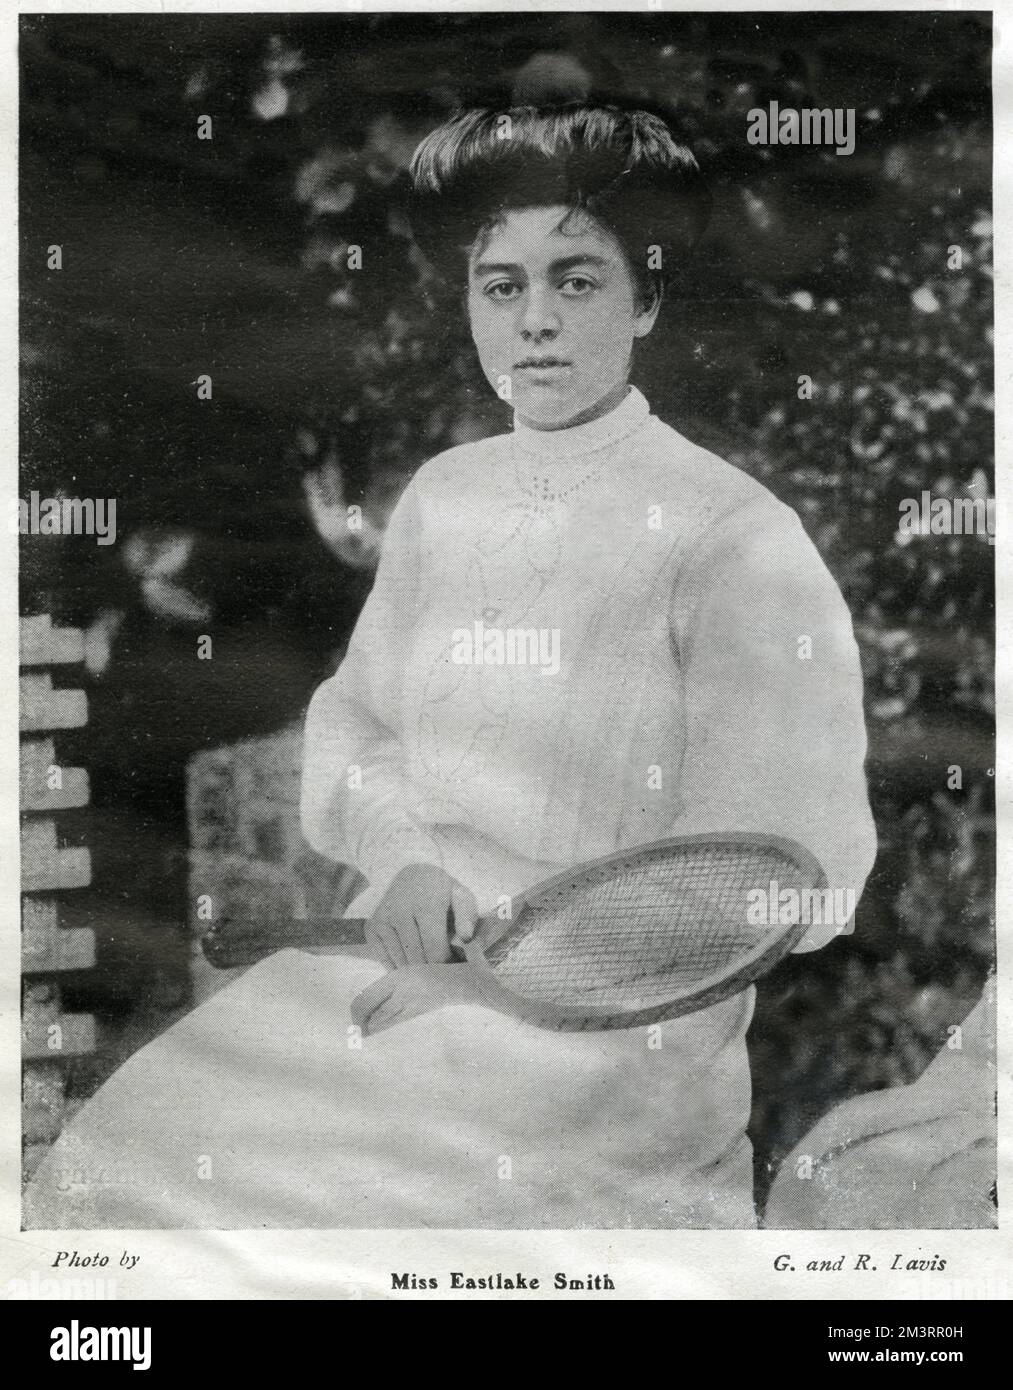 Gwendoline Eastlake-Smith (1883 - 1941), tennista inglese, vincendo una medaglia d'oro olimpica alle Olimpiadi estive di Londra del 1908. Data: 1905 Foto Stock